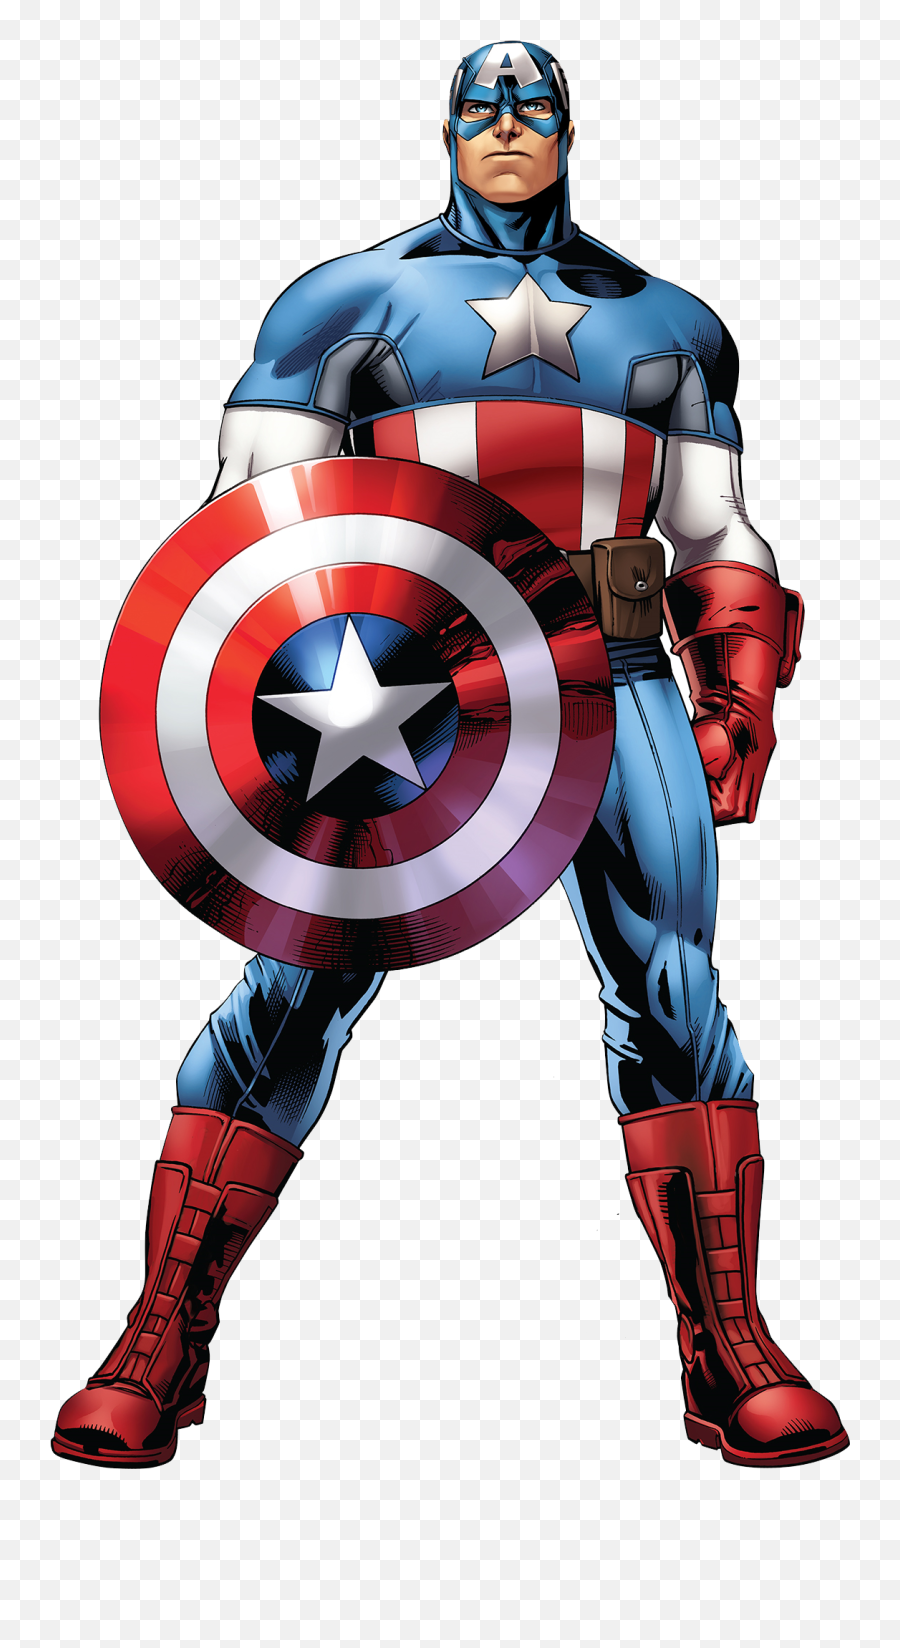 Captain America Marvel Avengers - Avengers Marvel Captain America Png,Captain America Comic Png